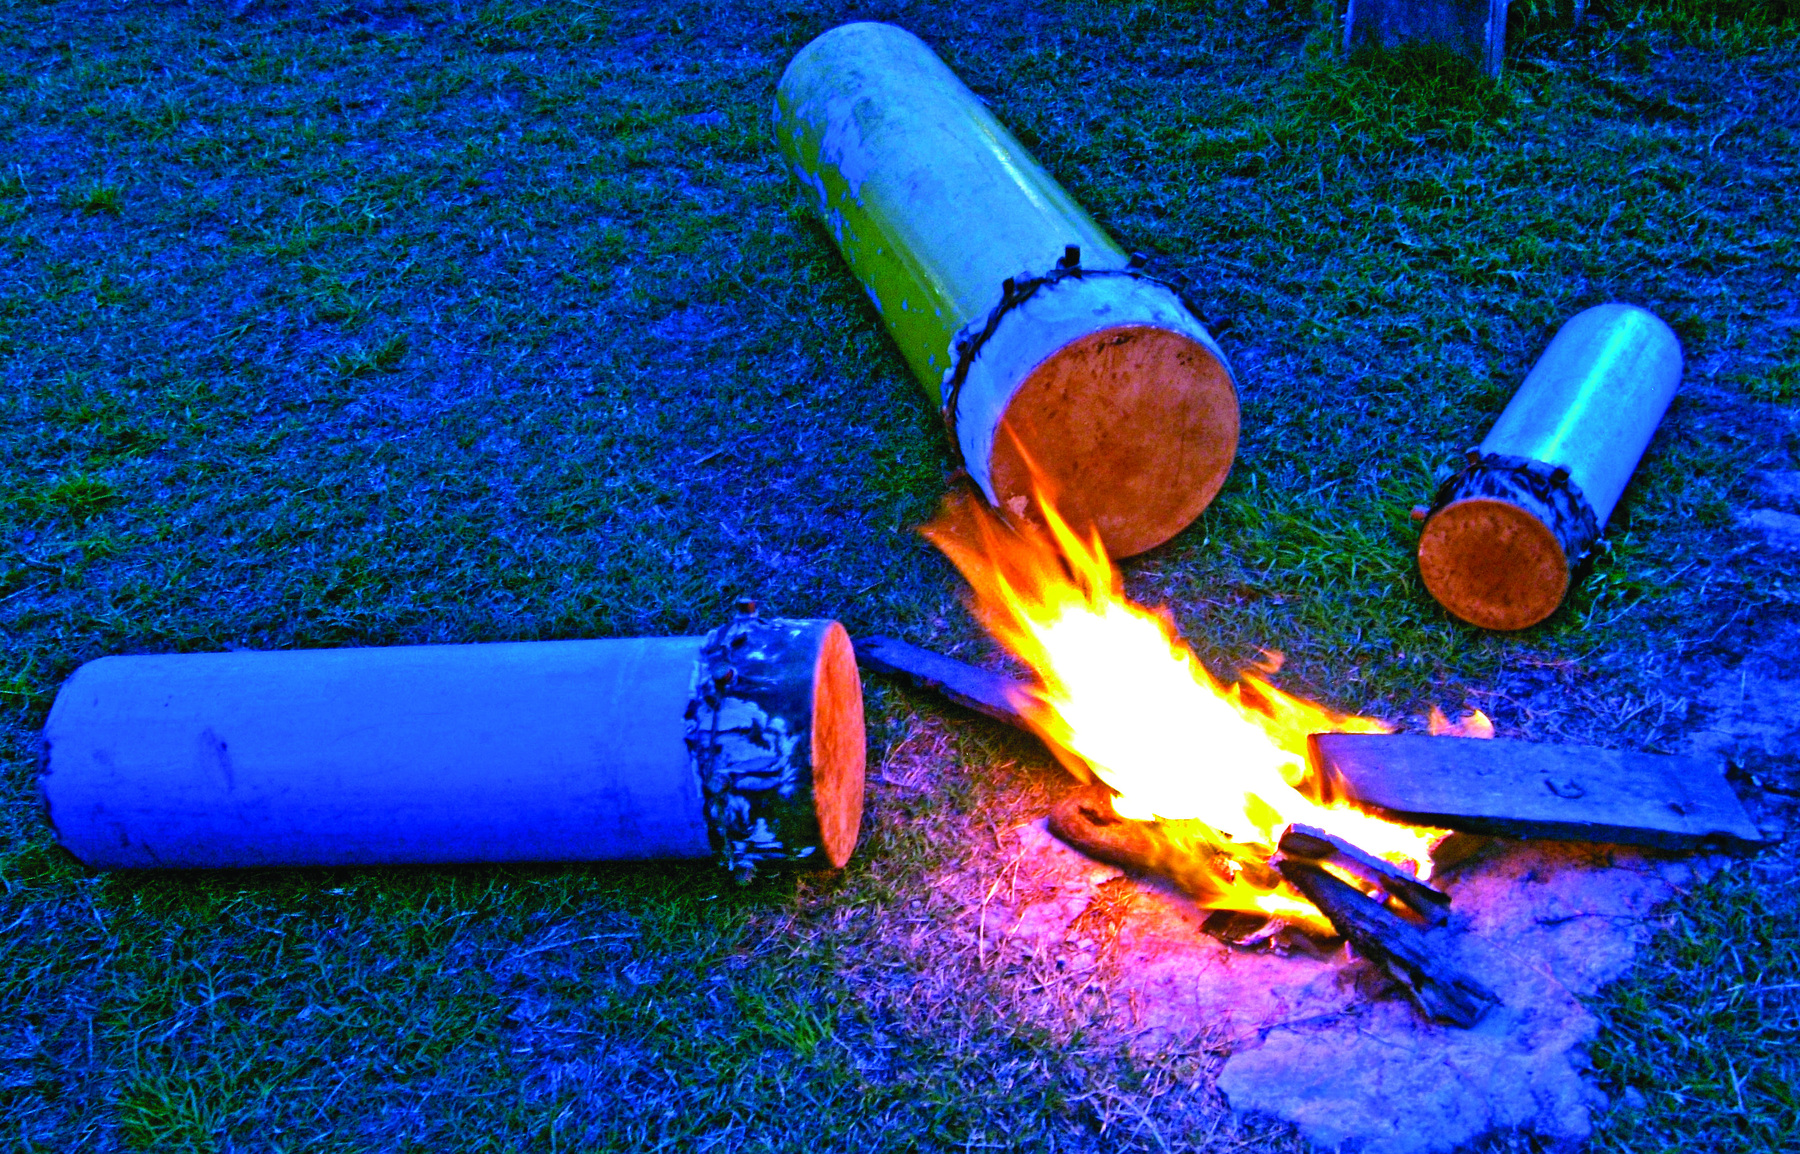 Fotografia. Três tambores de tamanhos diferentes ao redor de uma fogueira, sobre a grama.